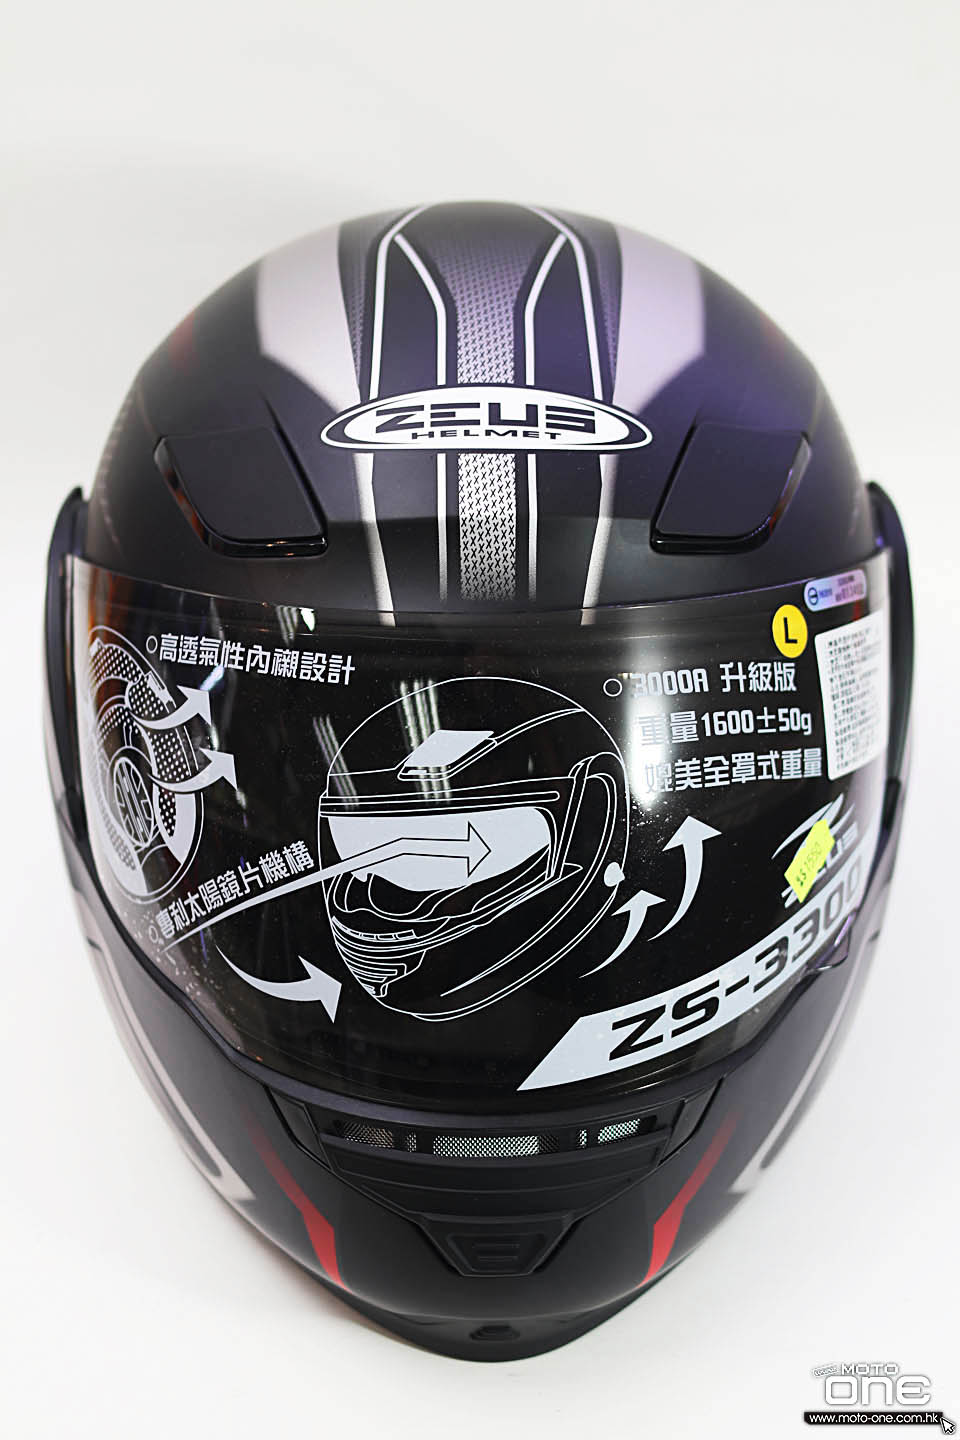 2018 ZEUS ZS-3300 helmet